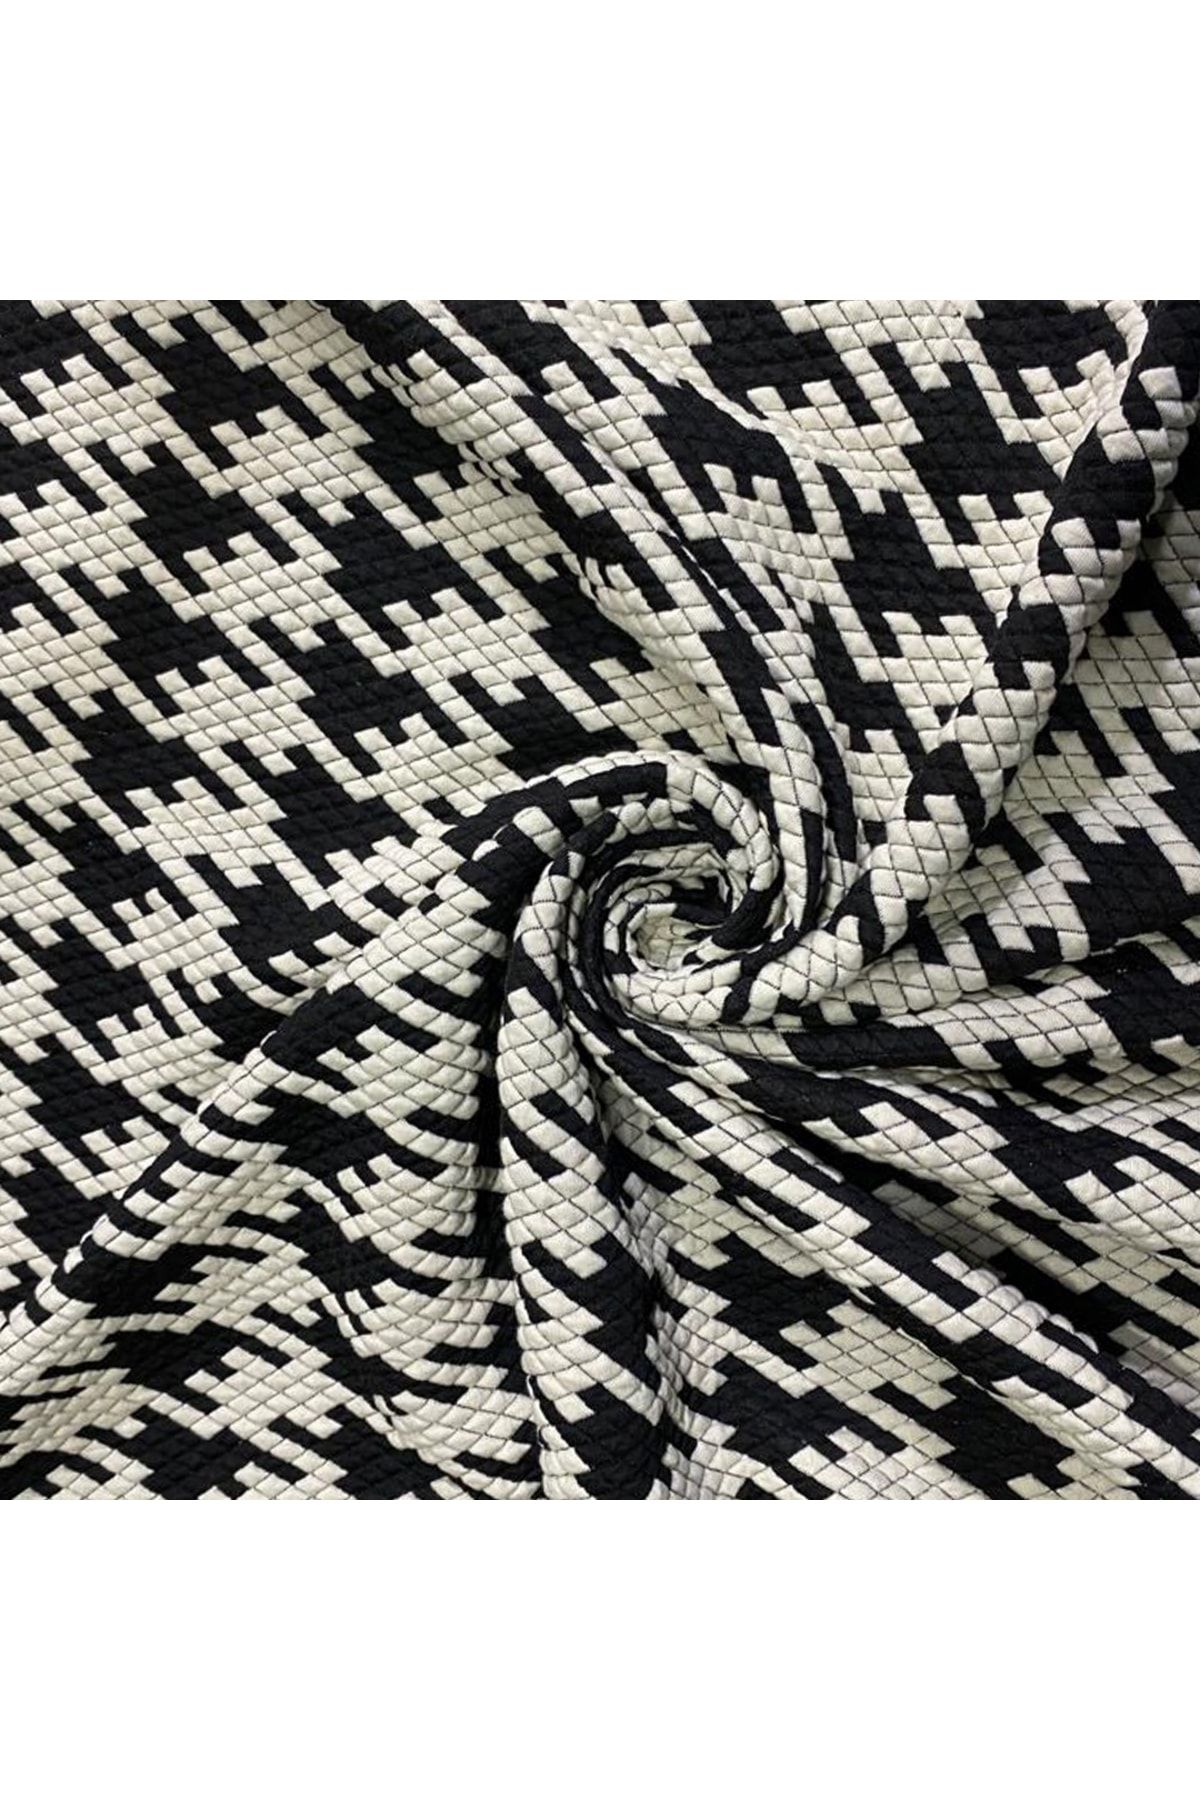 DORE Büyük Kazayağı Desen Siyah Beyaz Kumaş ( Elbiselik,pantalonluk,eteklik Kumaş)